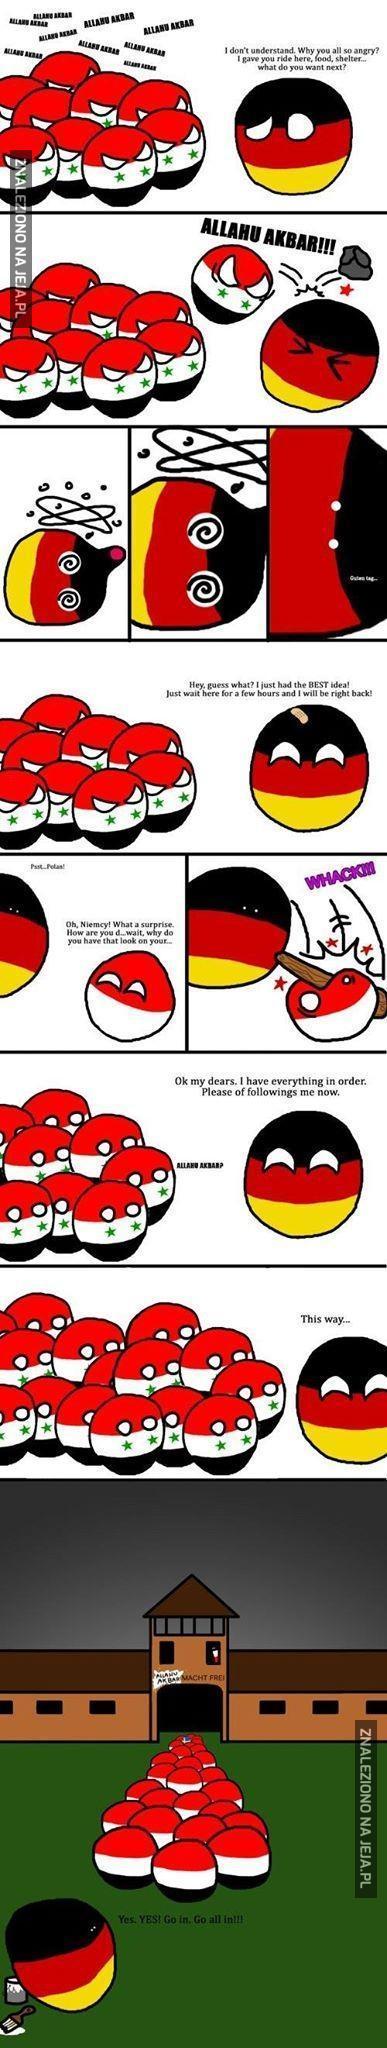 Niemieckie sposoby